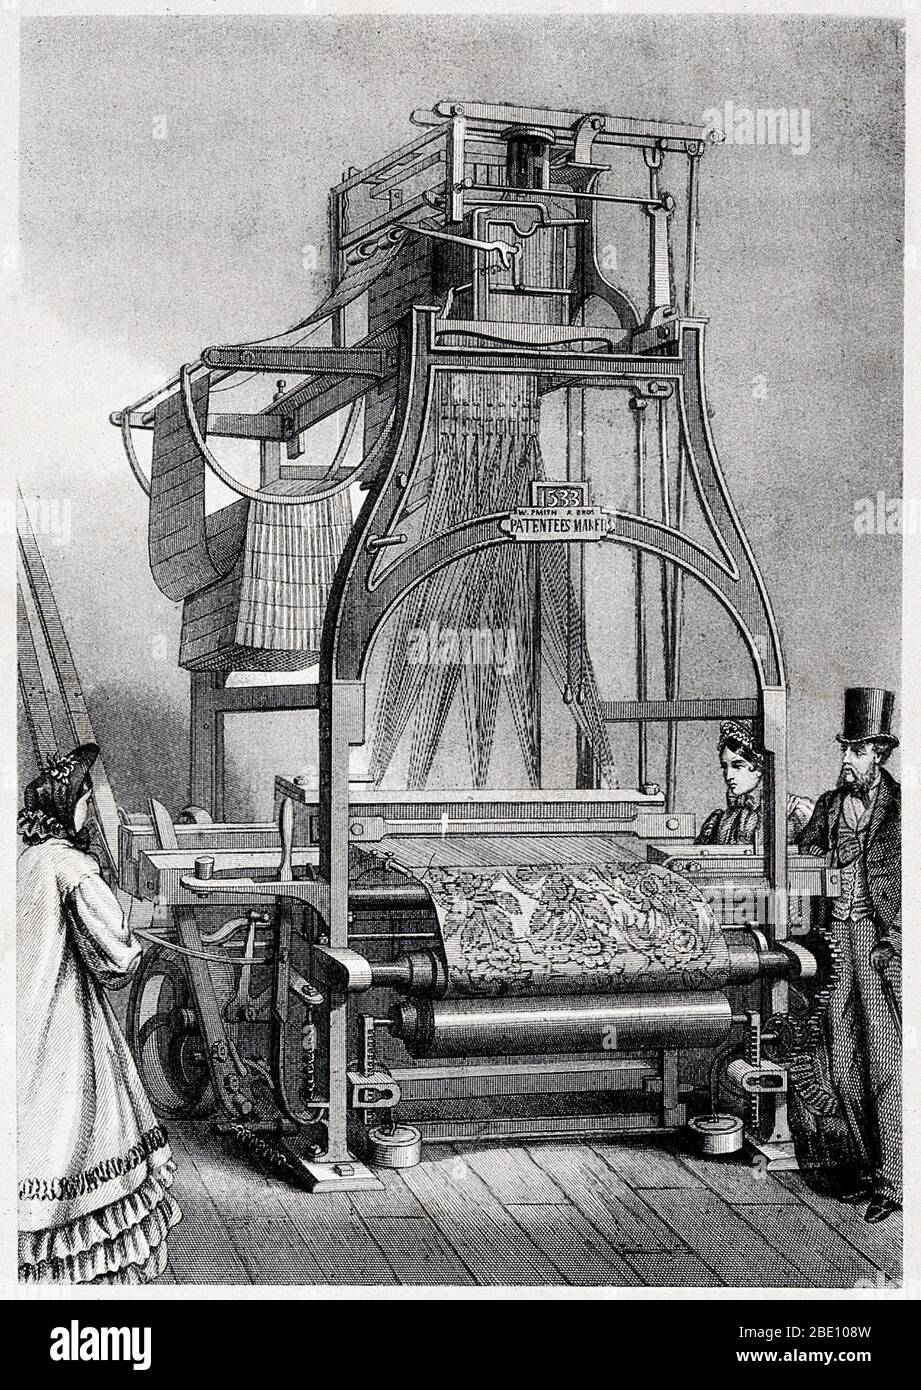 Ein mechanischer Jacquard-Webstuhl, vorne und hinten. Stich von Pegard nach L. Guiguet. Diese Vorrichtung zum Weben von Textilien wurde 1804 vom französischen Weber und Erfinder Joseph Marie Jacquard (1752-1834) erfunden. Es hatte eine Reihe von neuartigen Design-Features und war das erste, das automatisch gesteuert werden. Es wurde von einer Reihe von perforierten Karten gesteuert, die Löcher entsprechen dem Webmuster. Als dies in Fabriken eingeführt wurde, gab es Unruhen unter Arbeitern, die befürchteten, ihre Arbeitsplätze zu verlieren. Stockfoto